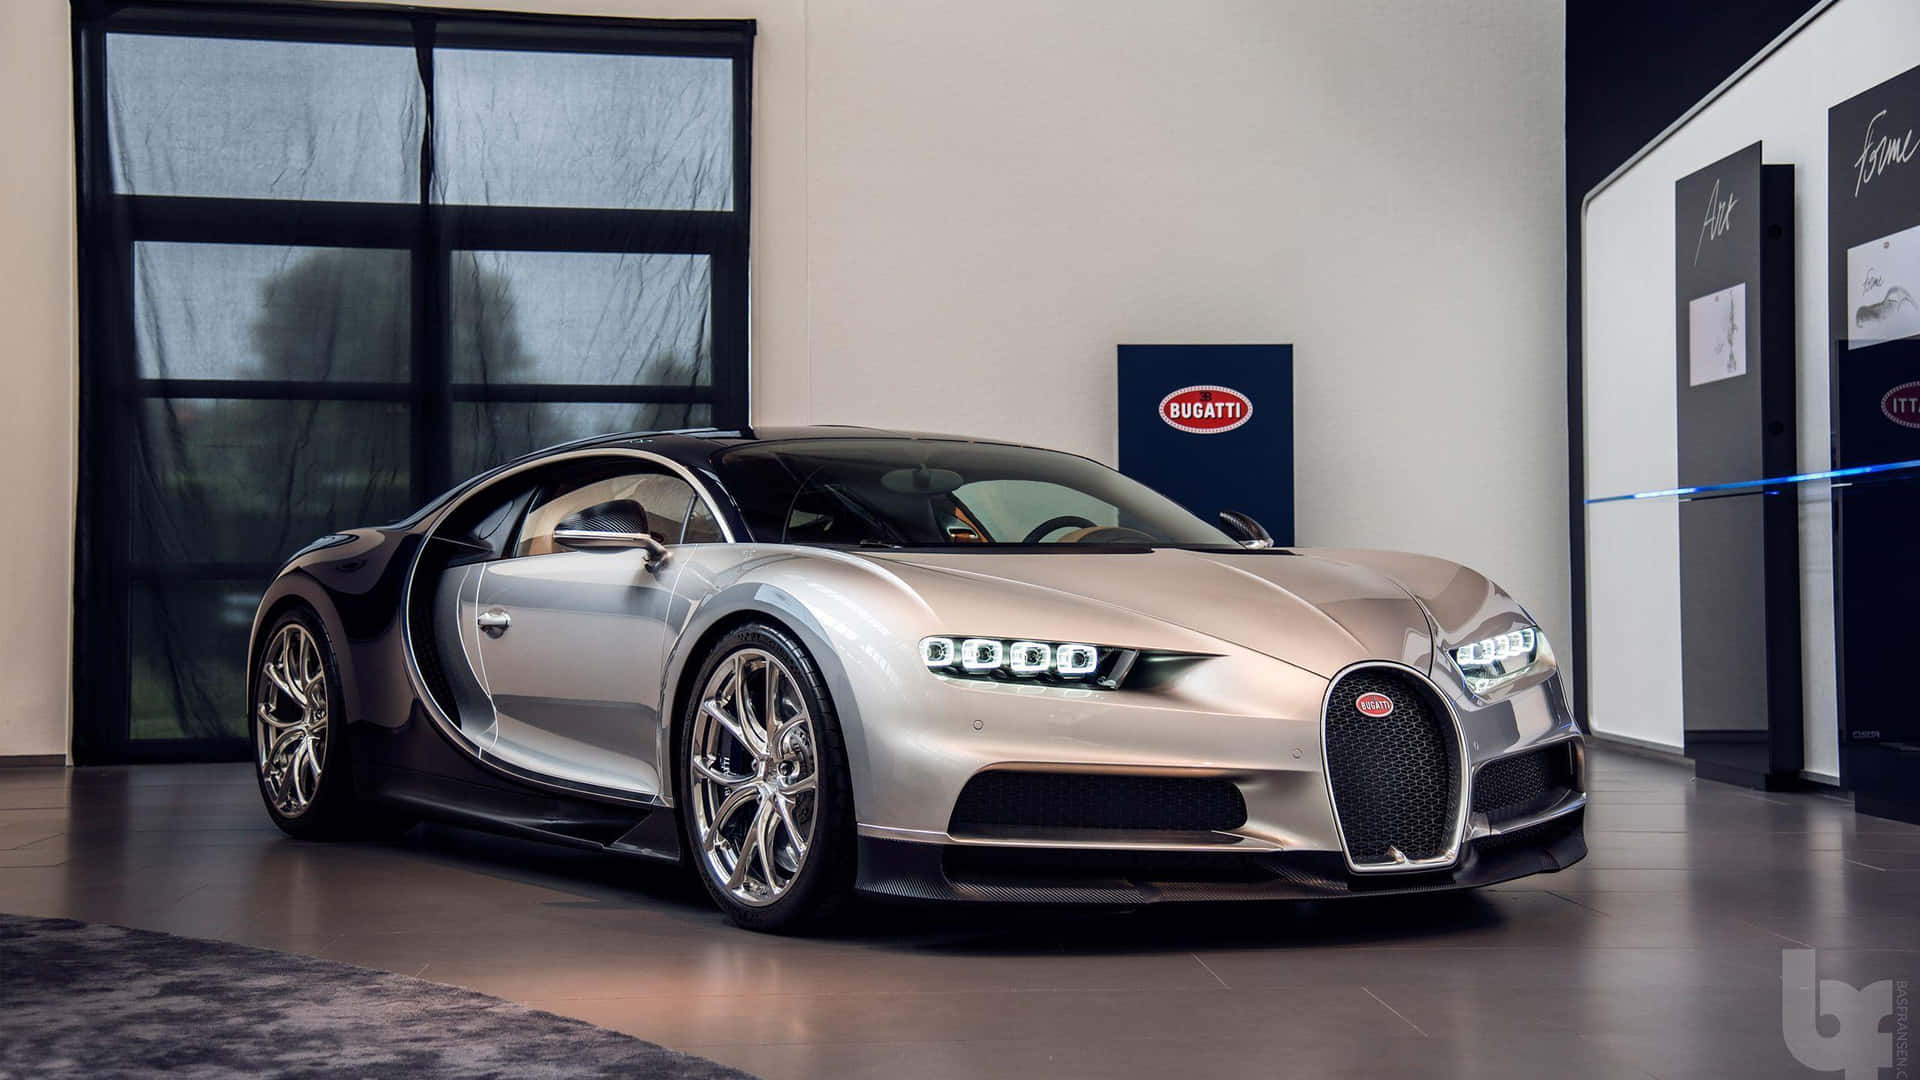 Silver Bugatti Expensive Parked